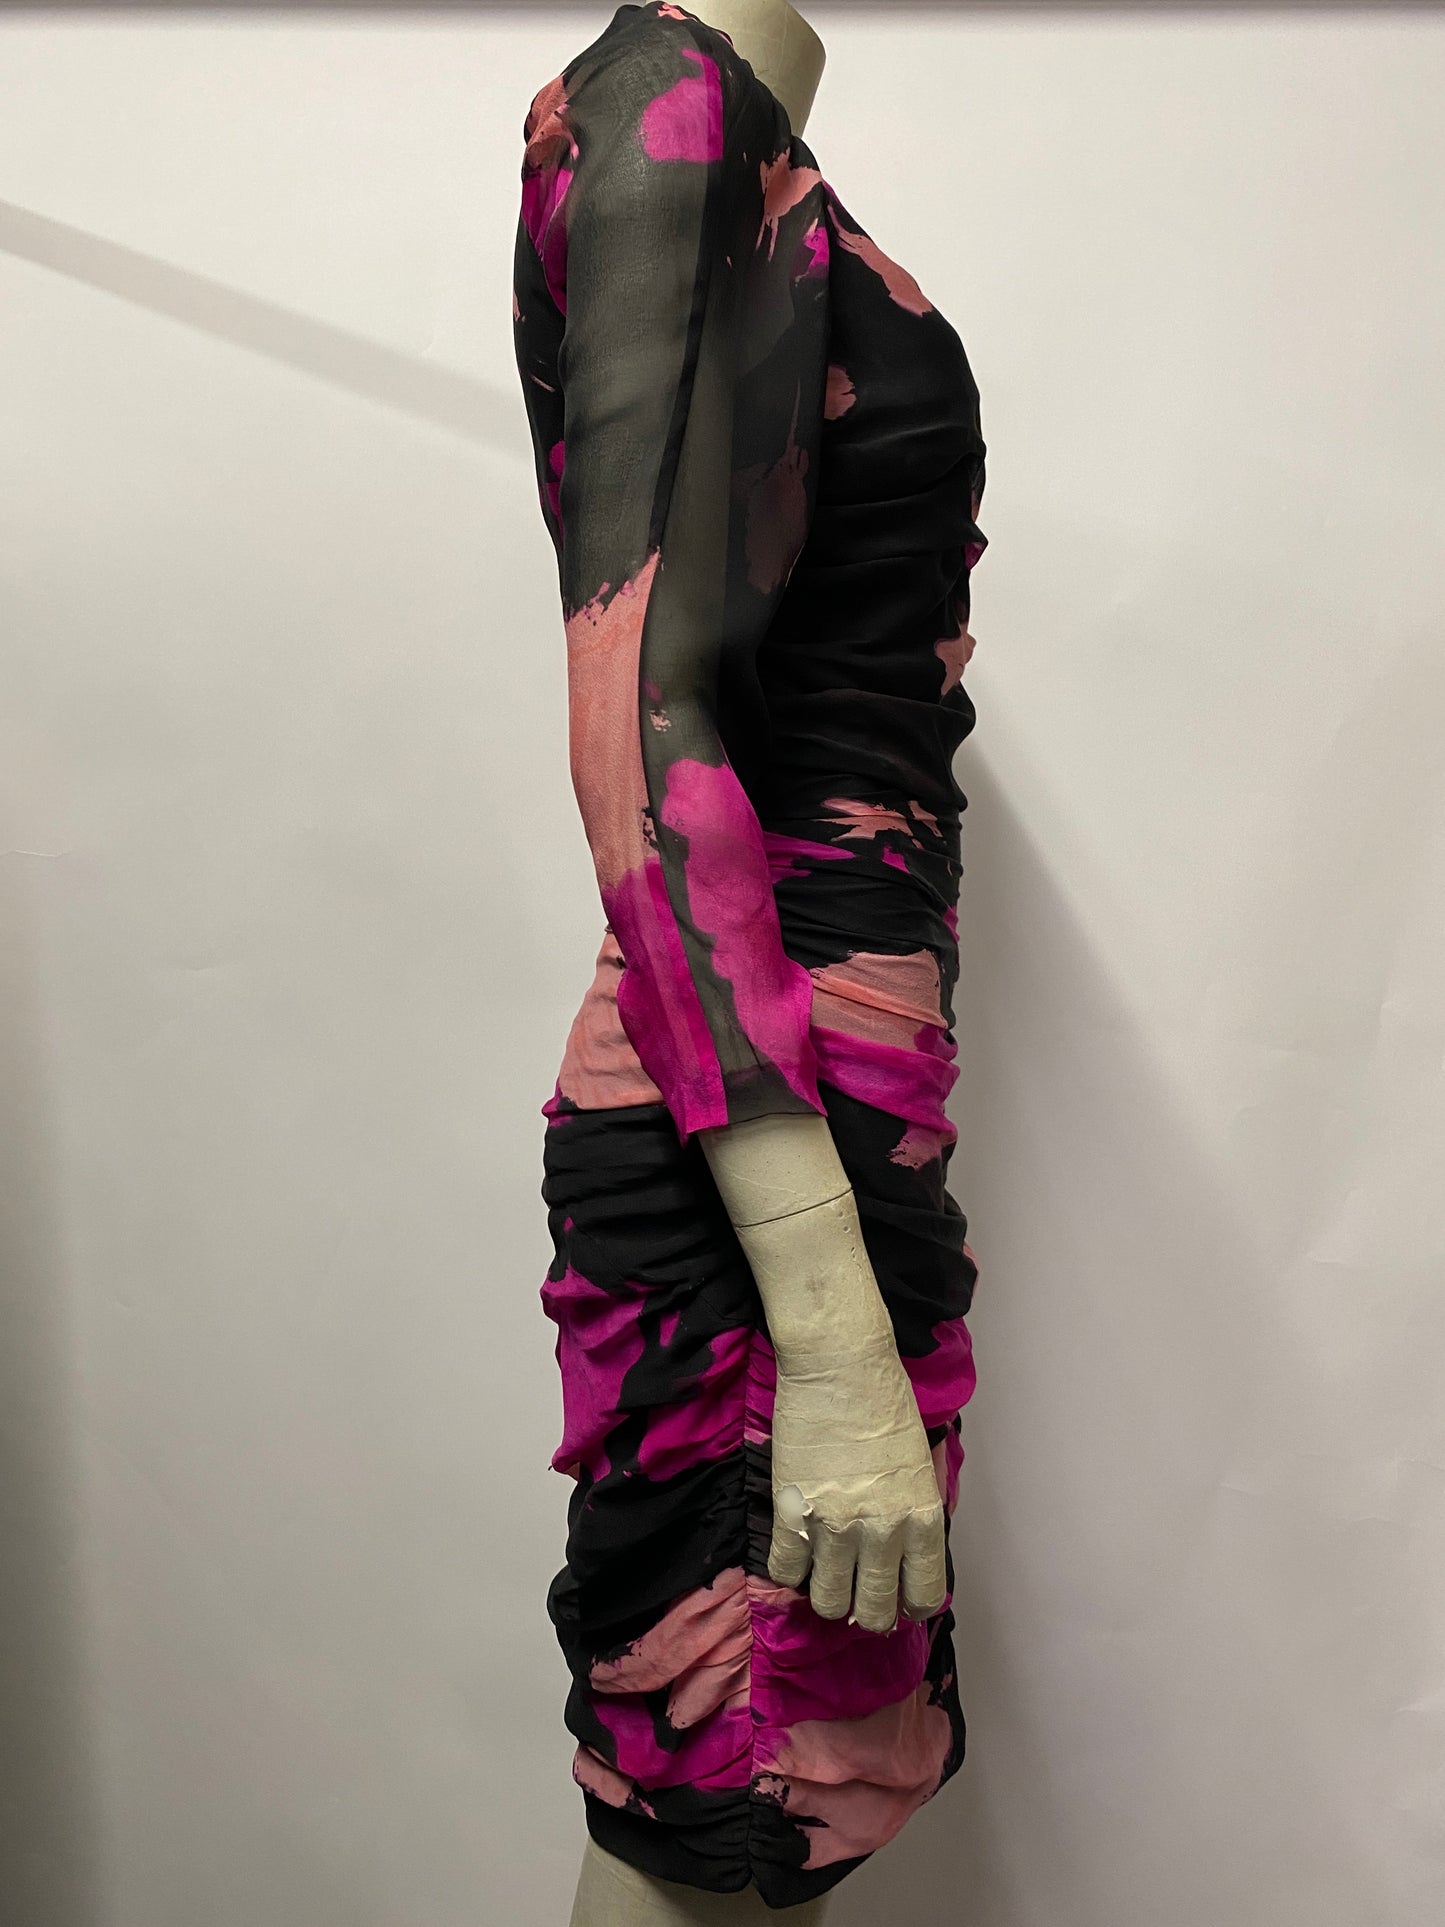 Diane Von Furstenberg Pink and Black Silk Ruched Mini Dress 10